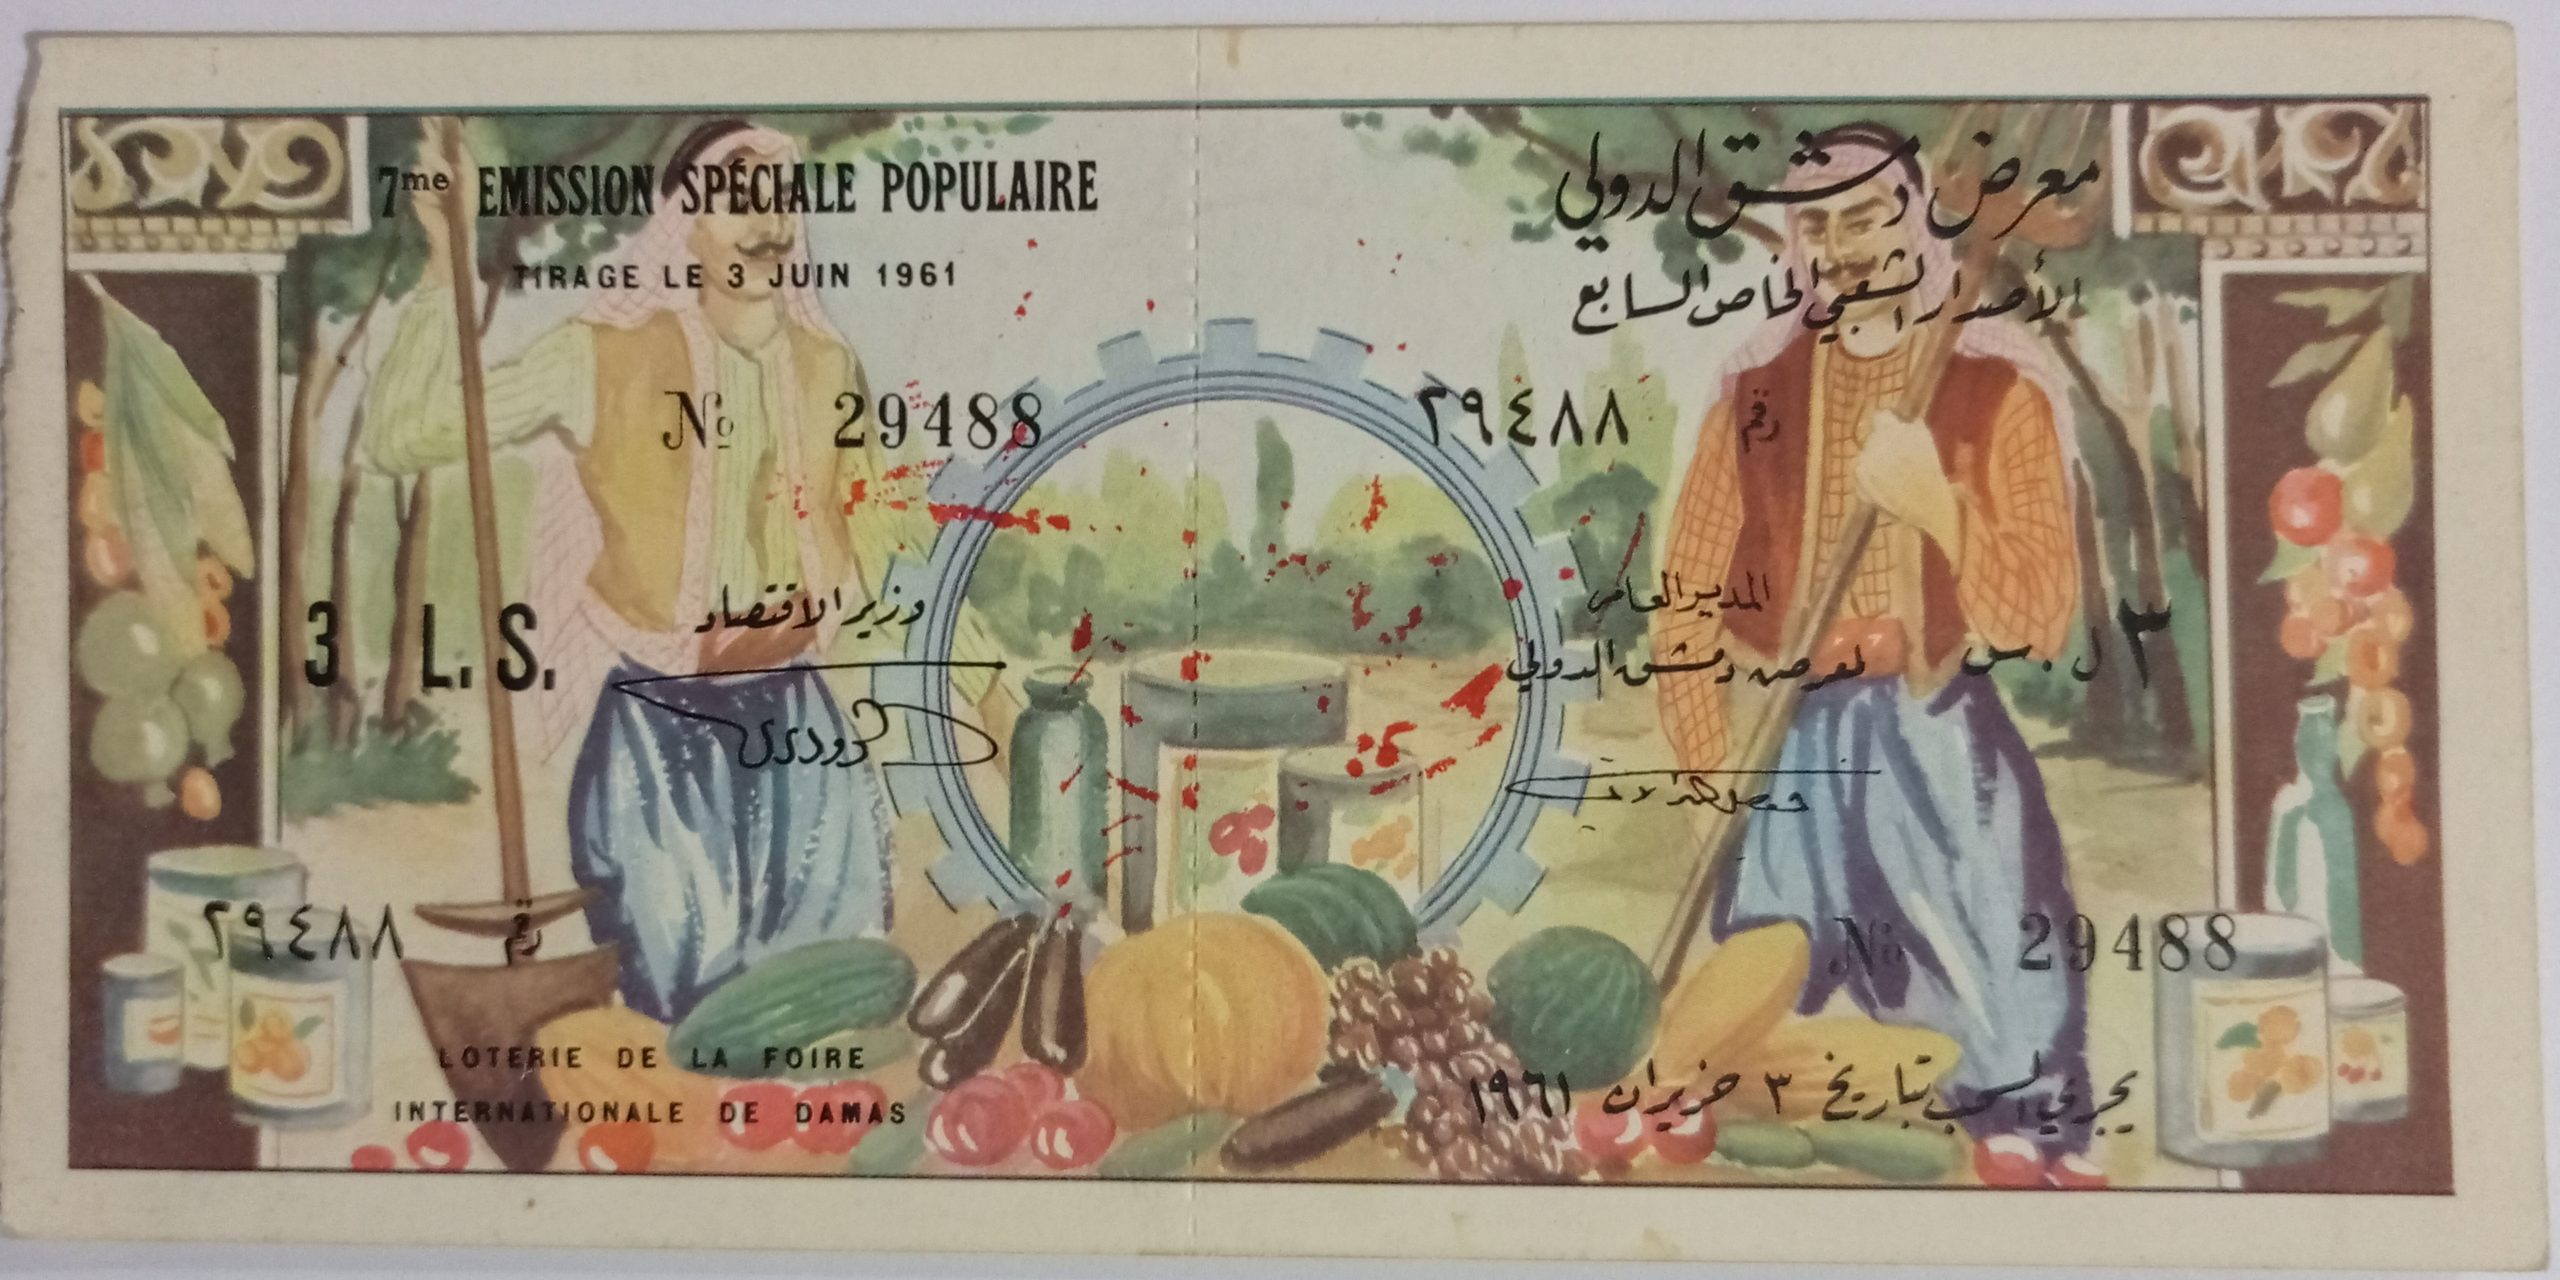 التاريخ السوري المعاصر - يانصيب معرض دمشق الدولي - الإصدار الشعبي الخاص السابع عام 1961